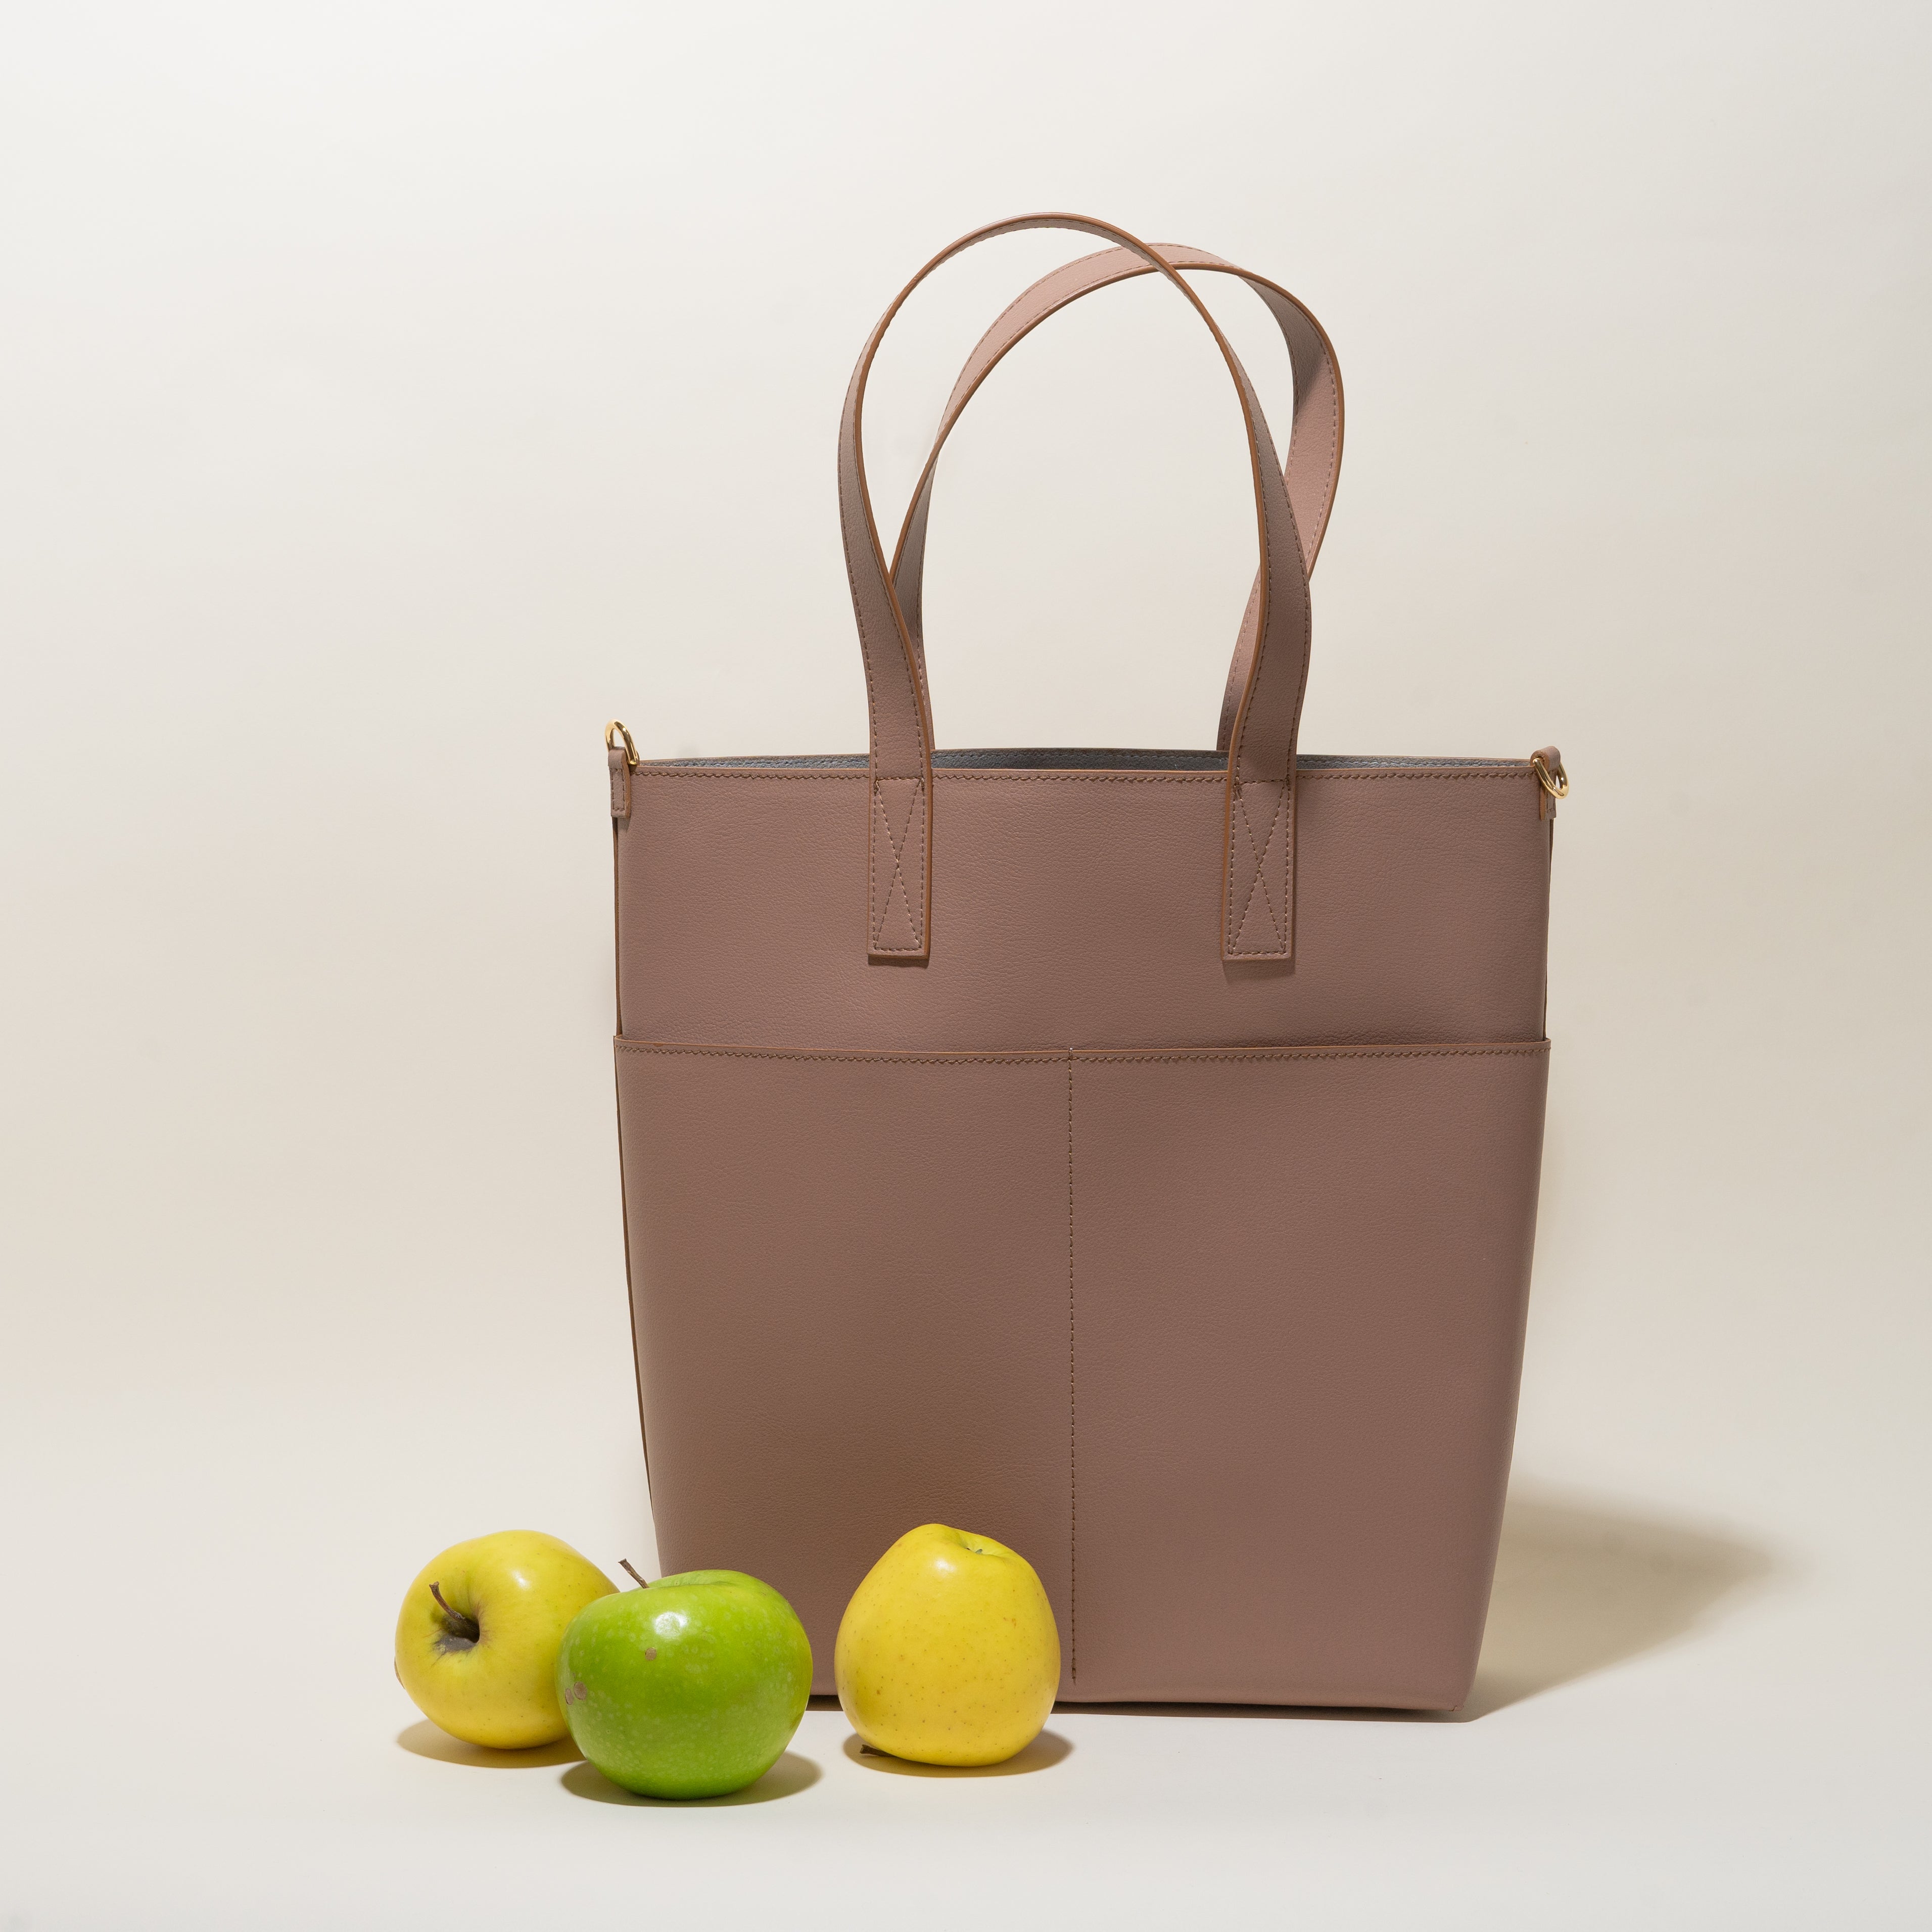 Apple Tote Bag